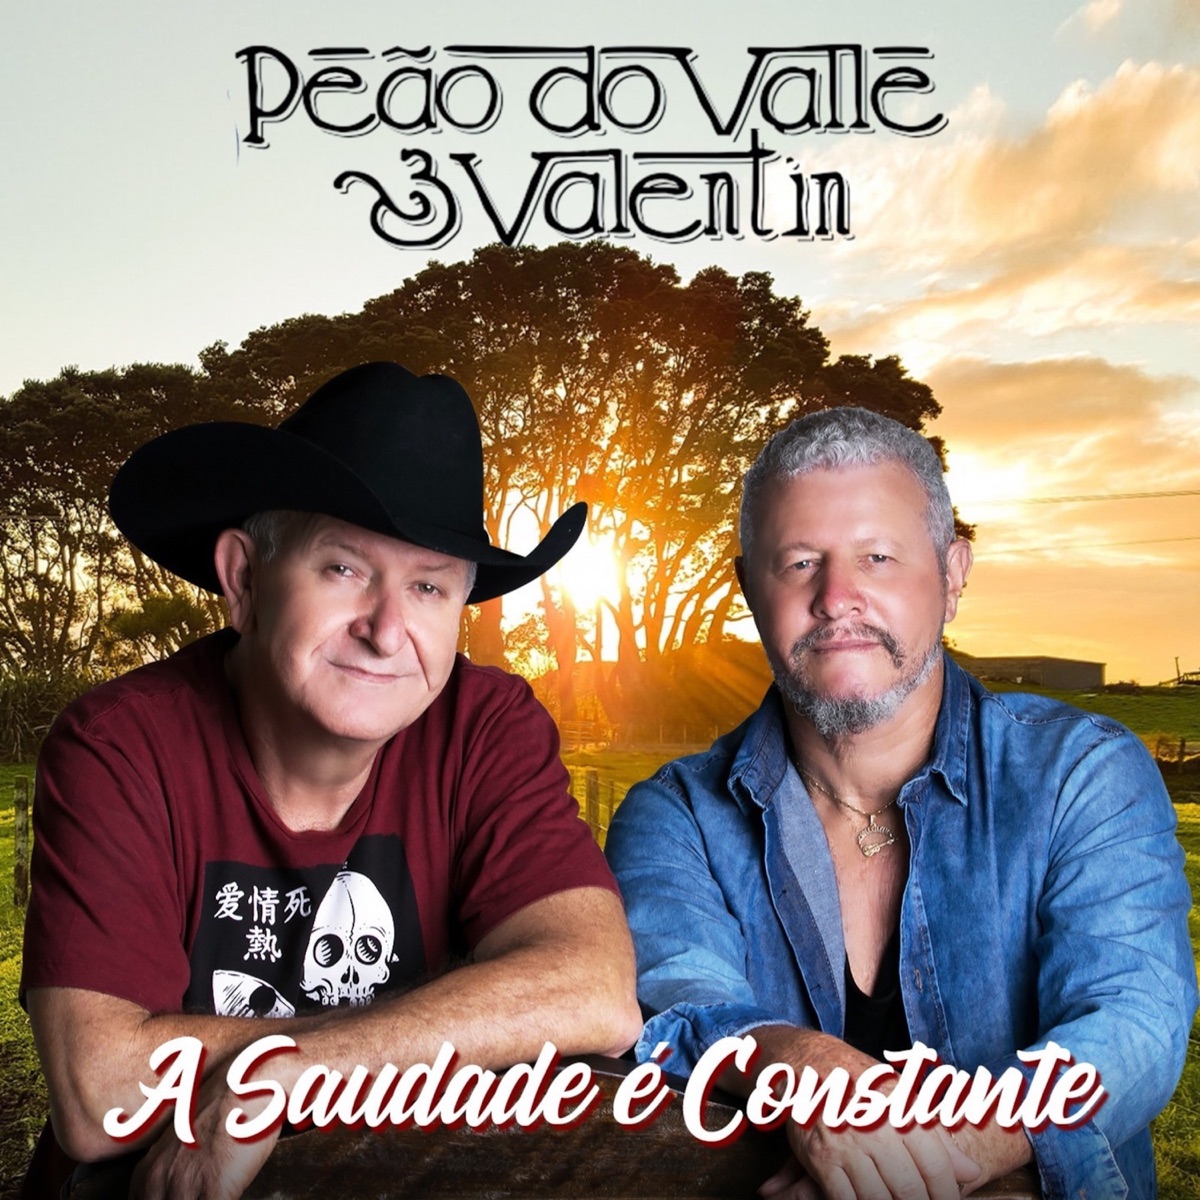 Peão de Cristo - Album by Peão do Valle & Valentin - Apple Music